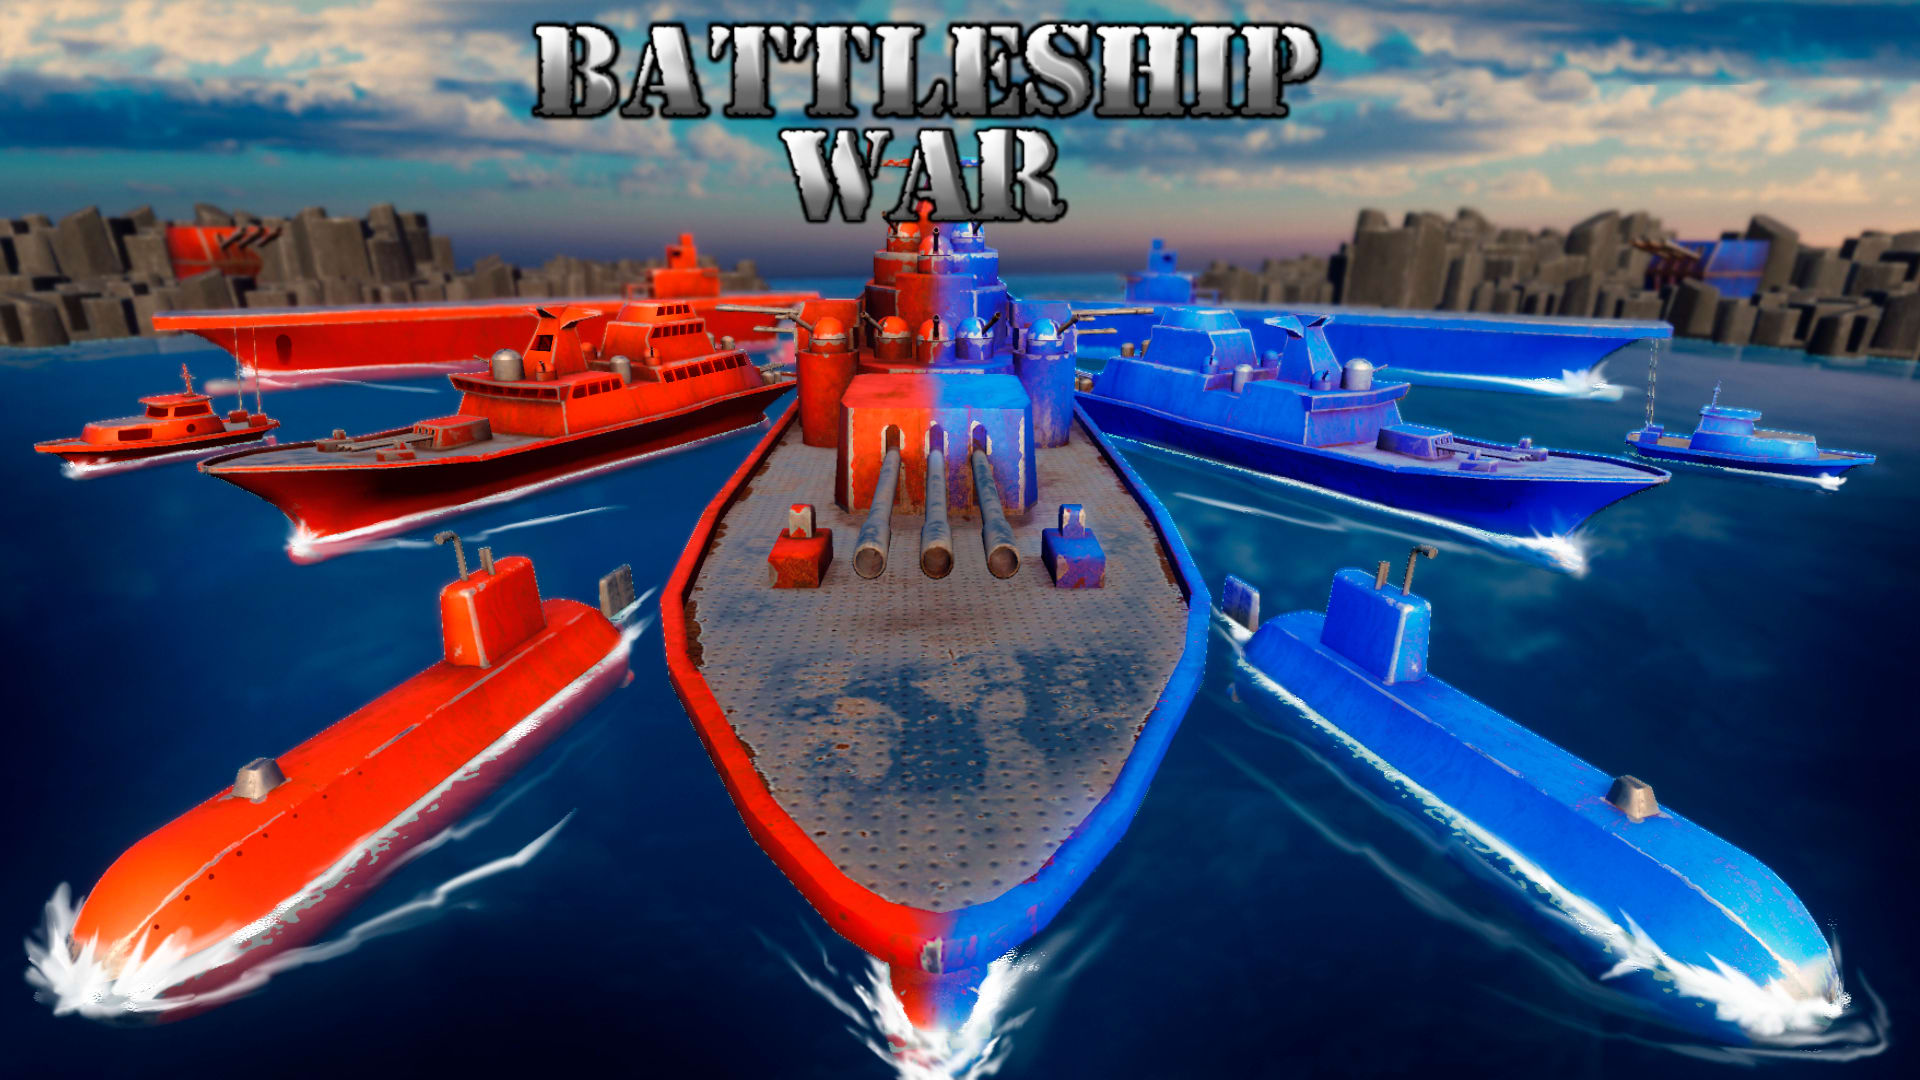 Battleship War: Time to Sink the Fleet 1